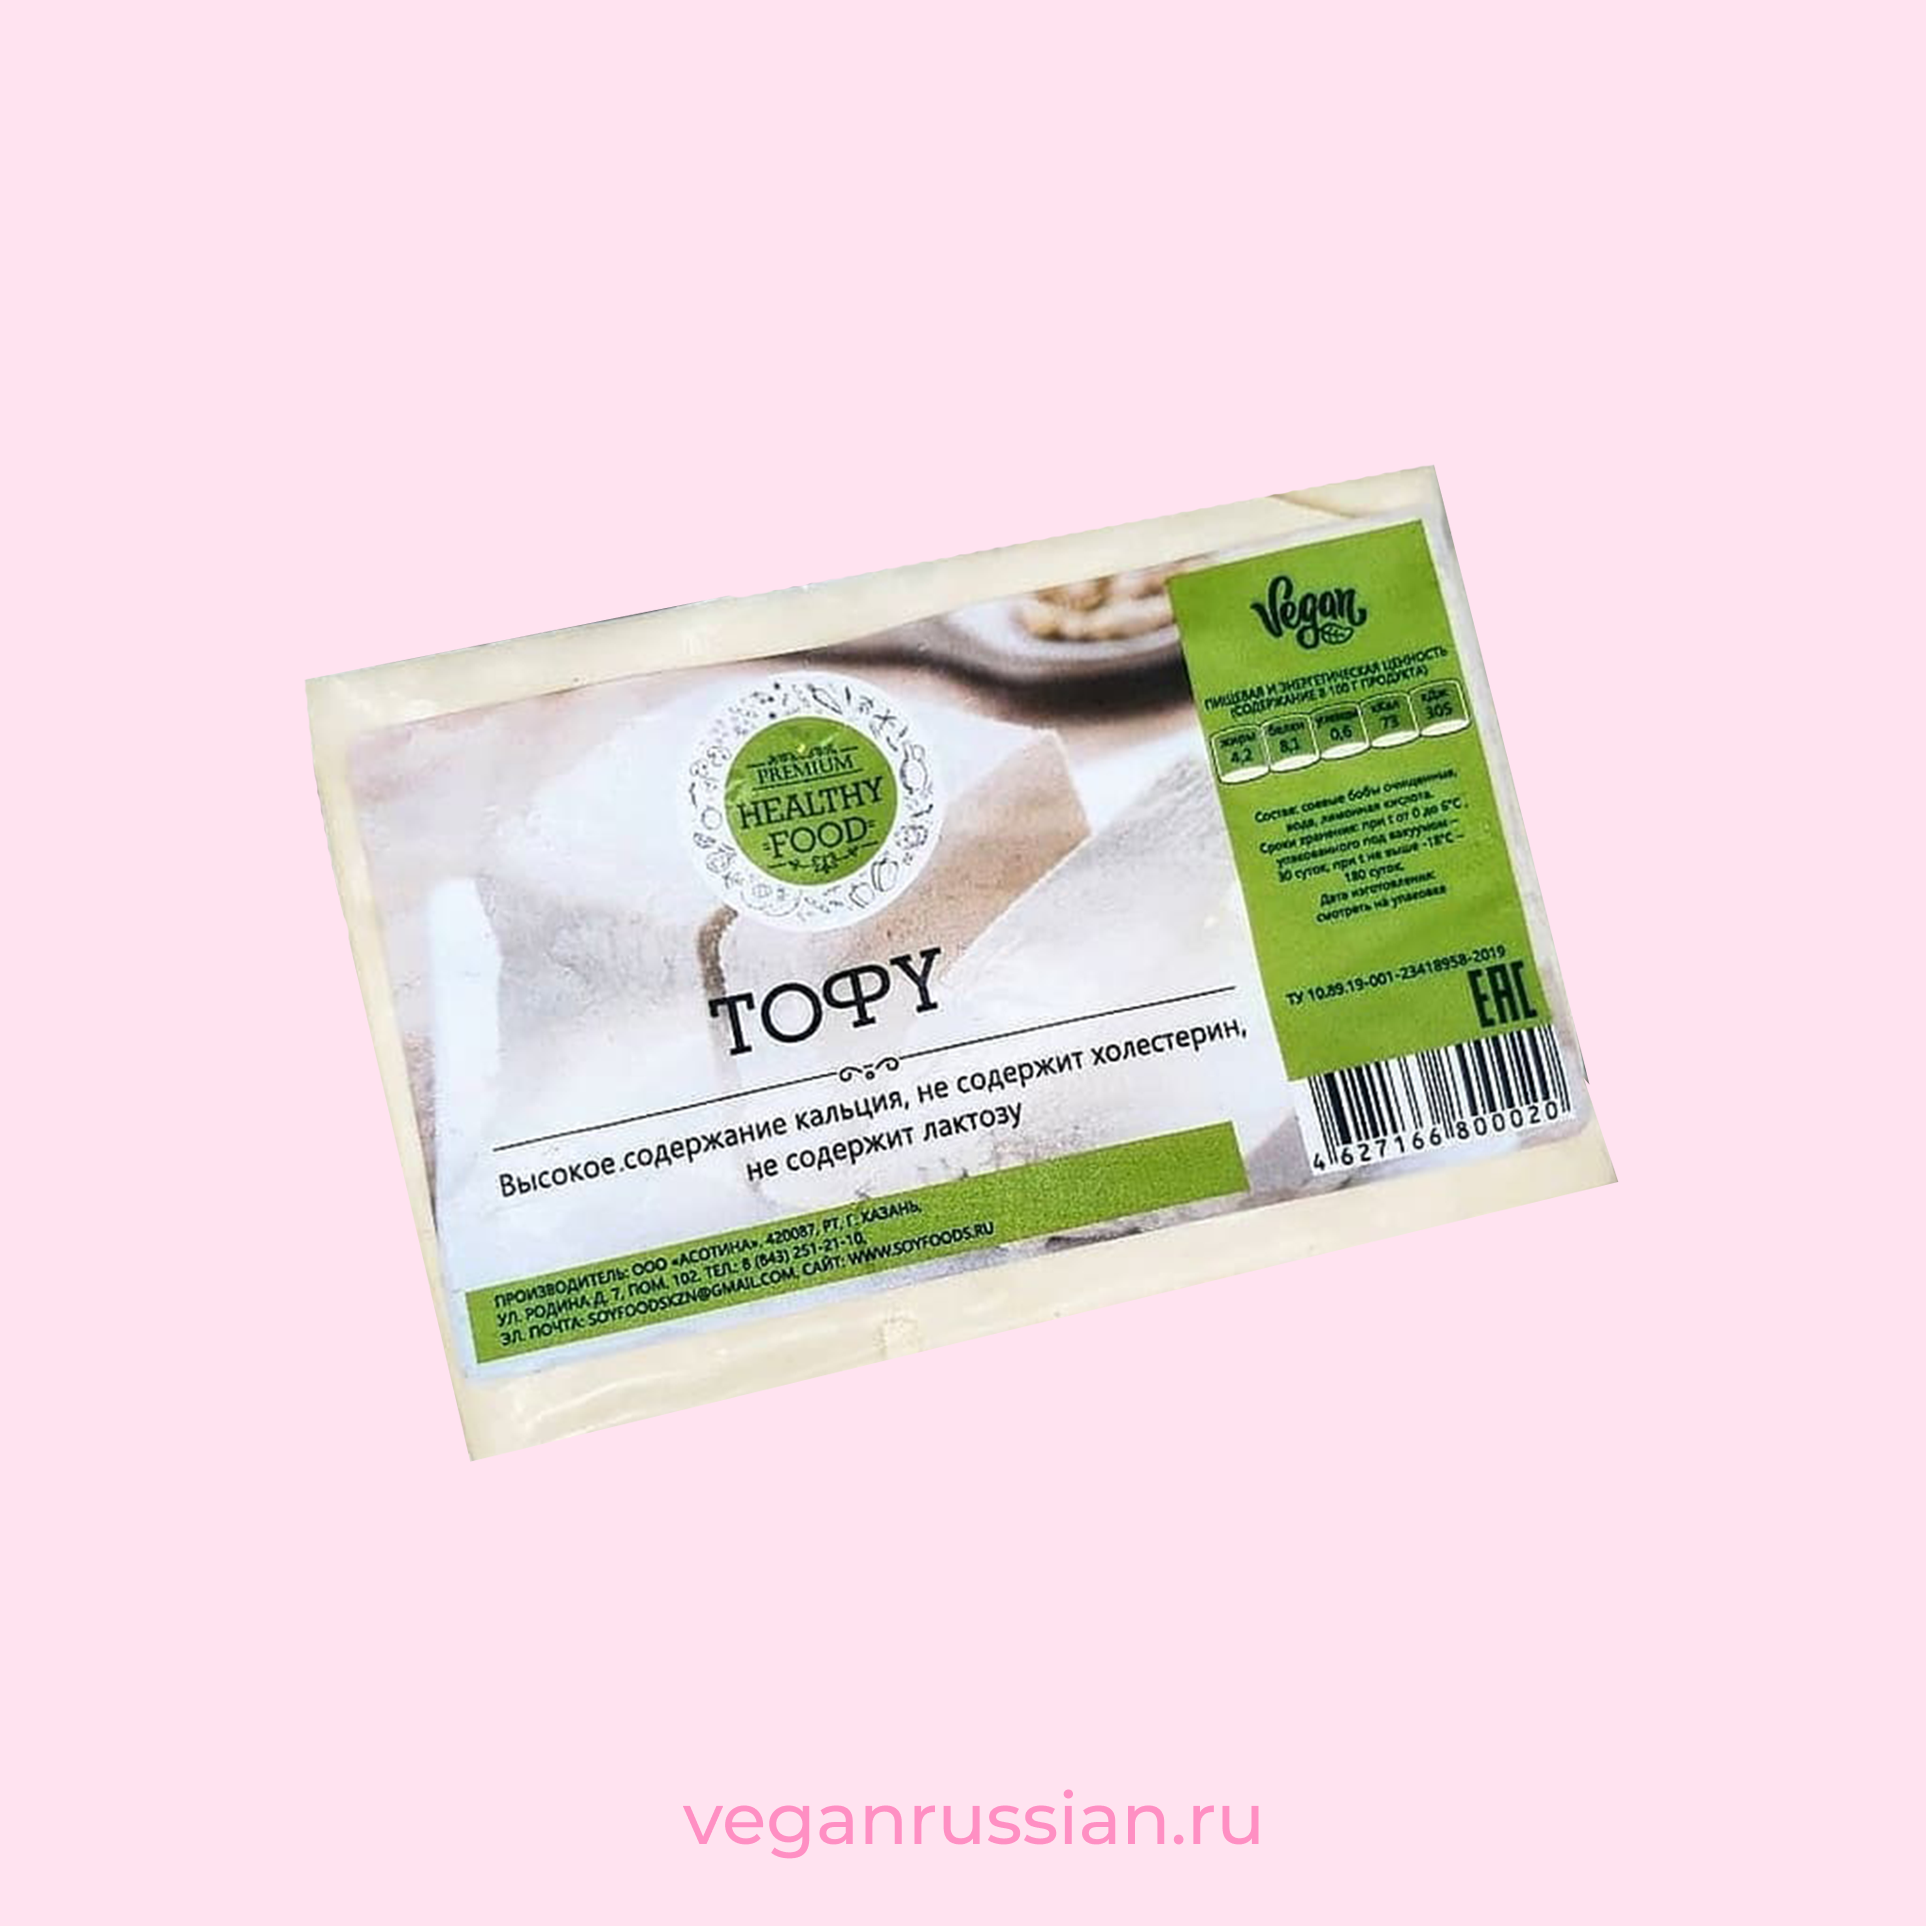 Тофу классический Healthy Food 350 г